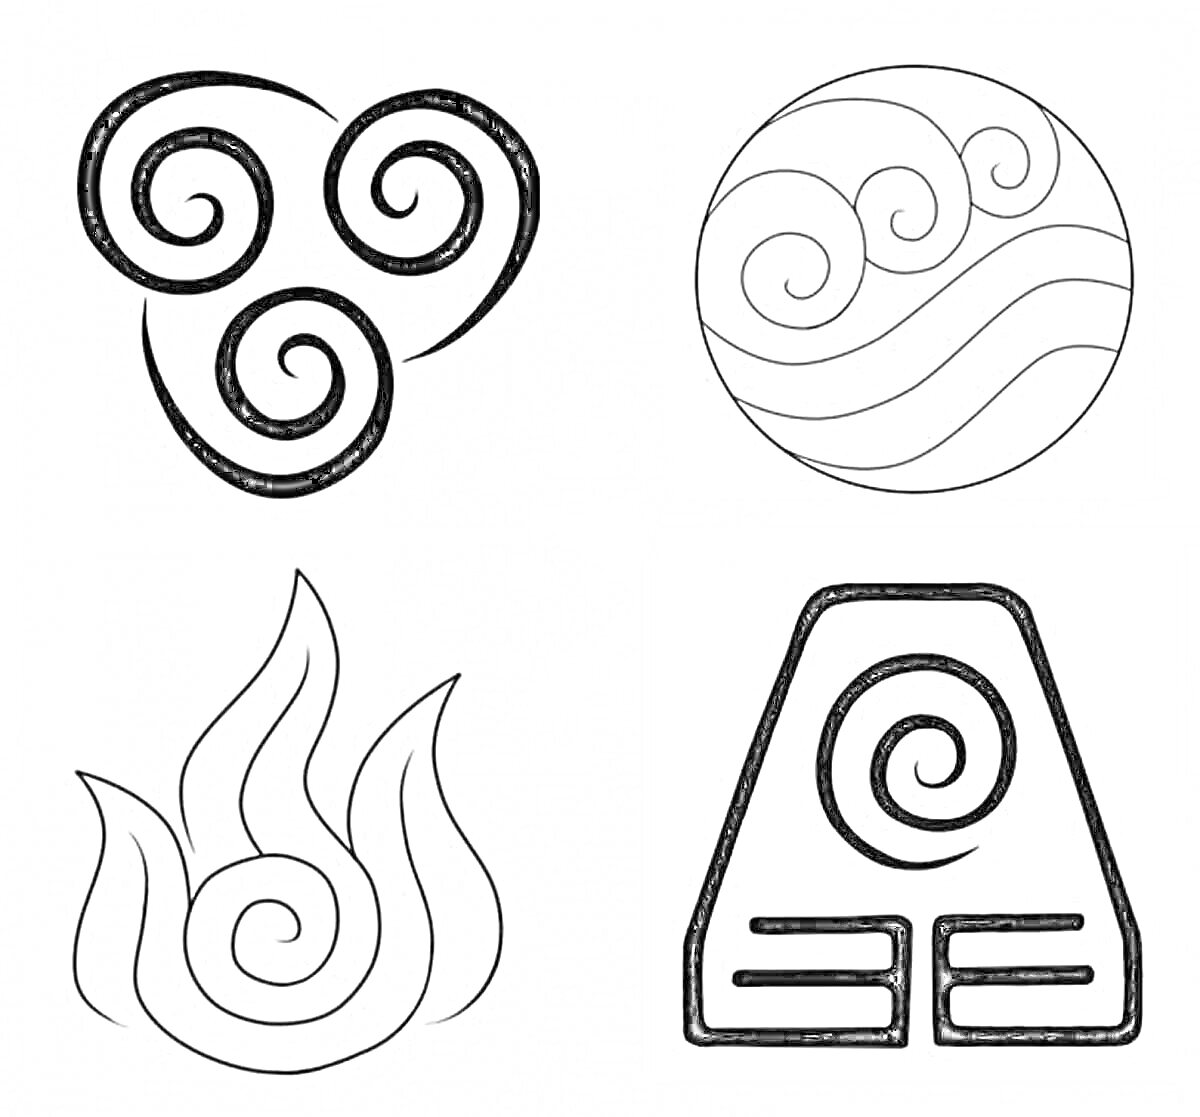 Раскраска Стихии: воздух, вода, огонь, земля. Символы стихий в черно-белых узорах, состоящие из завитков и стилизованных элементов.